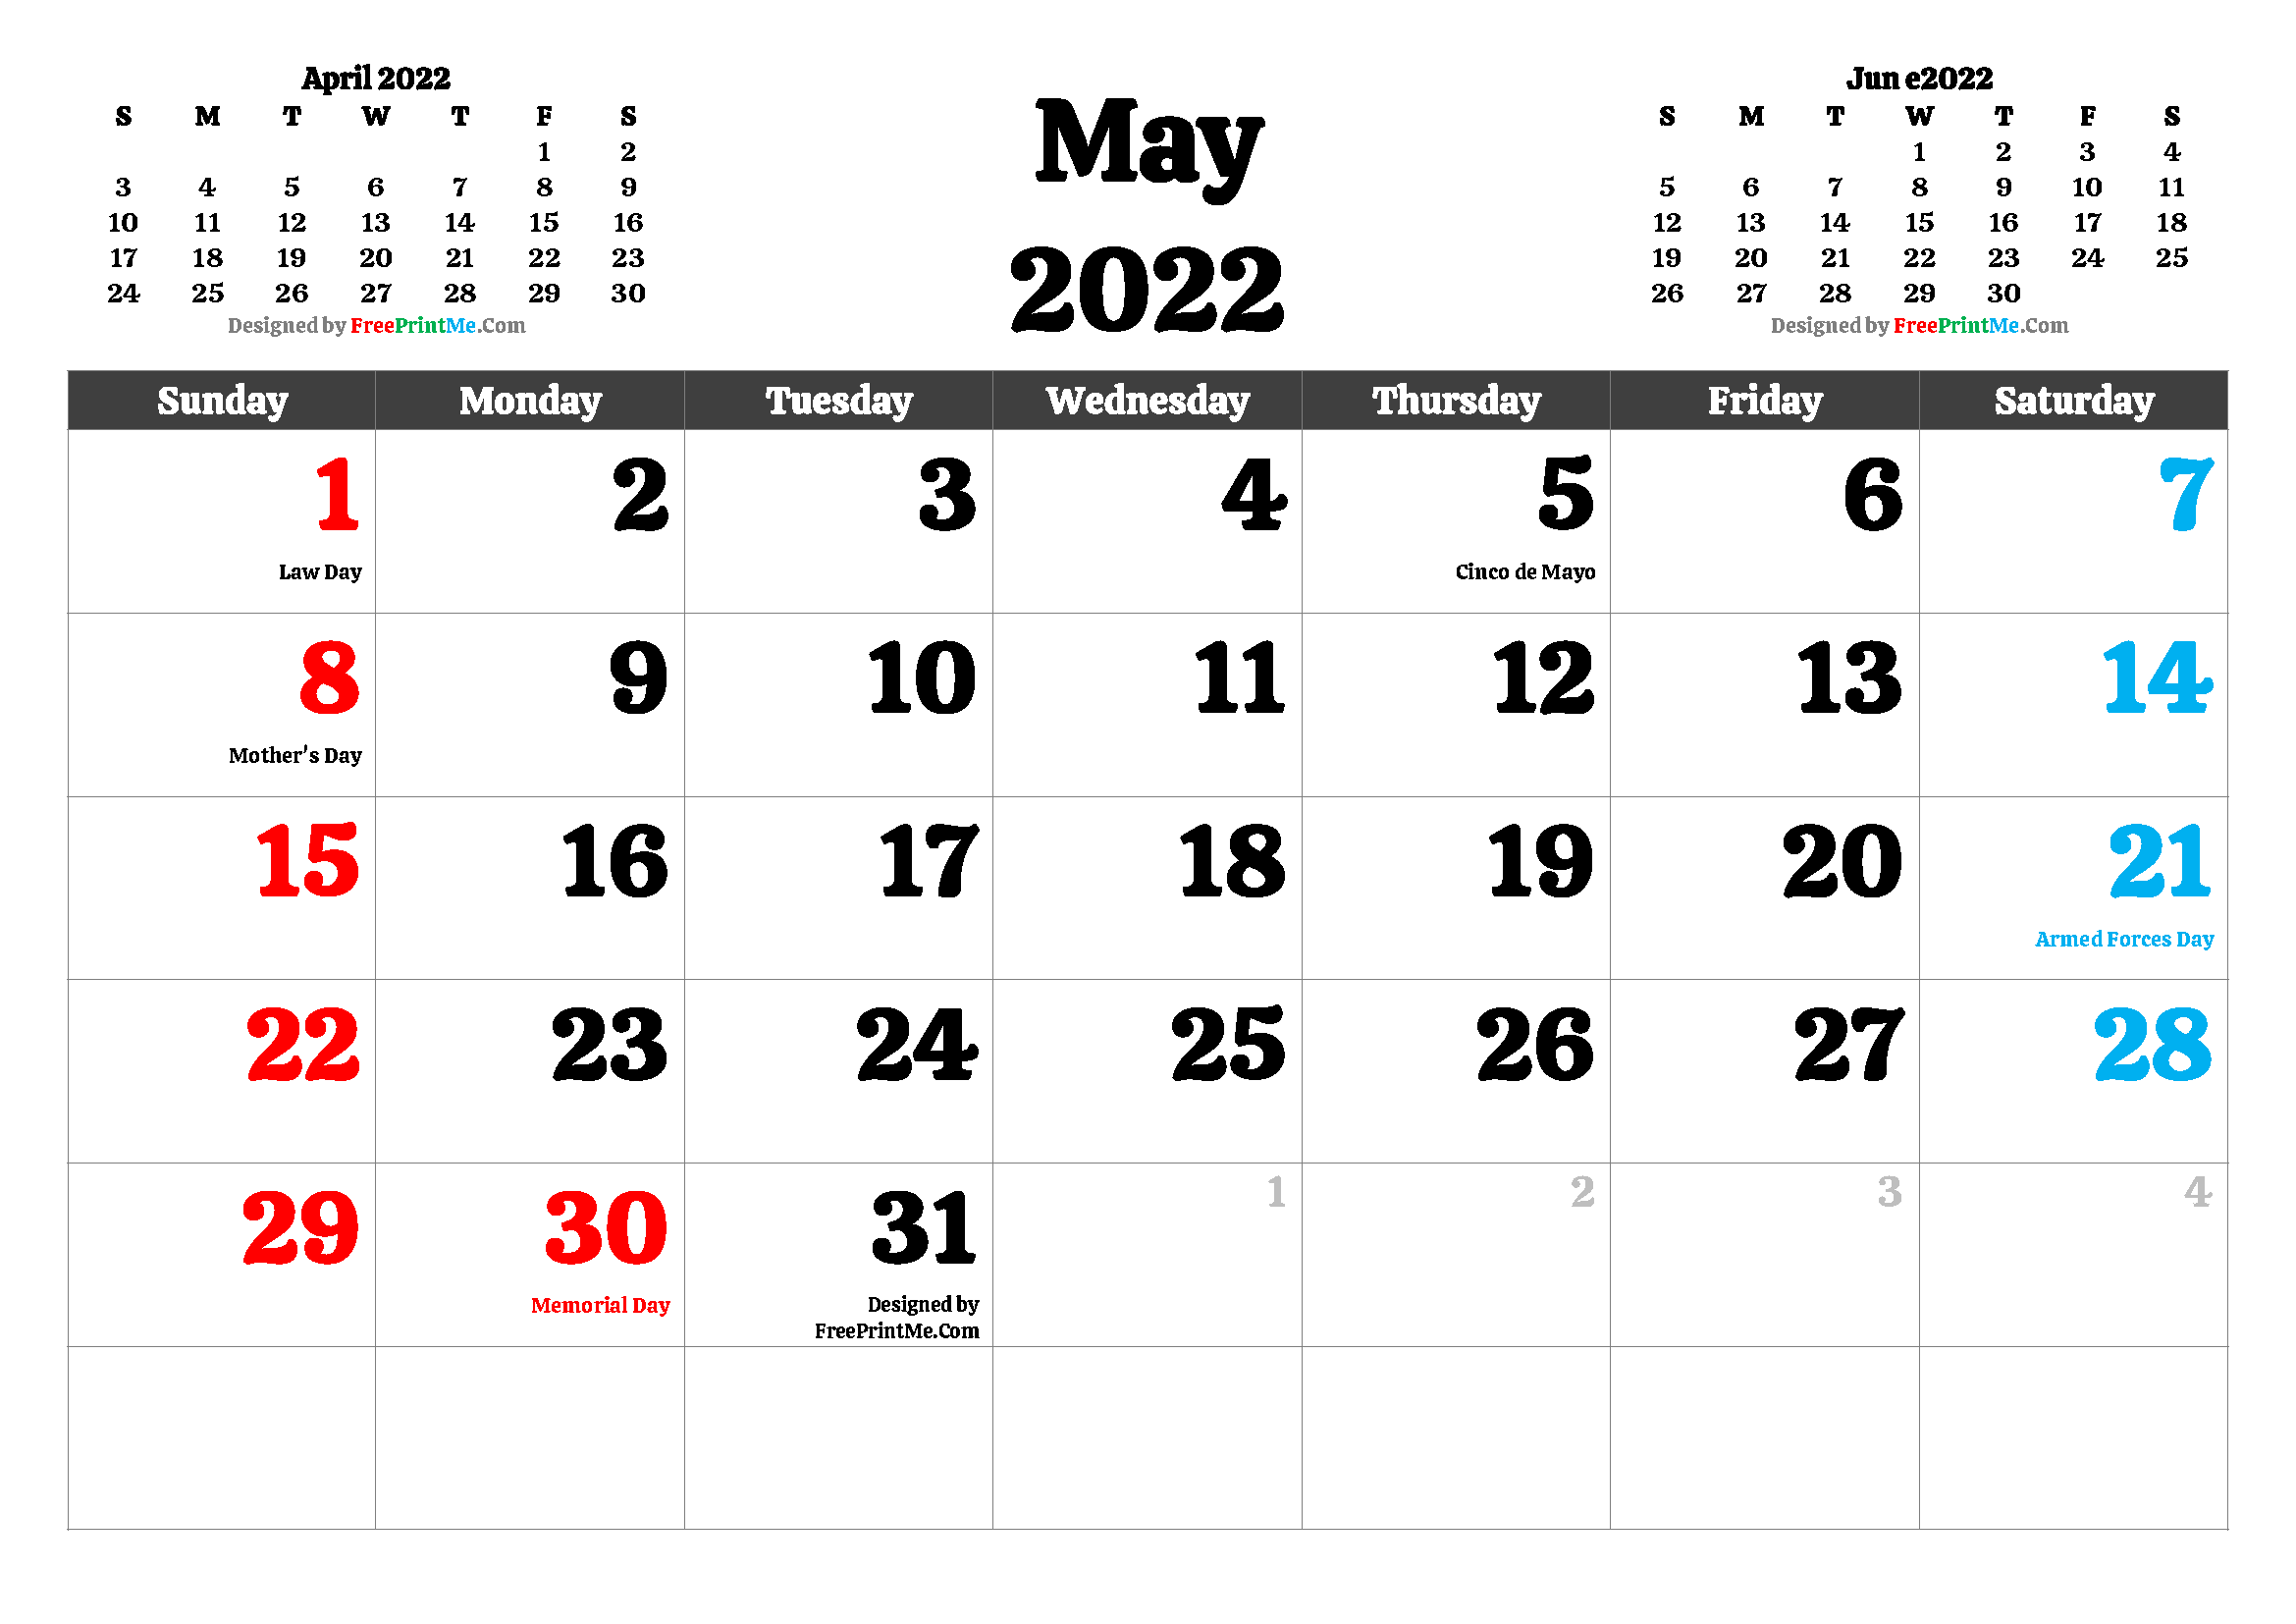 Free Printable Calendar 2022 With Holidays Free Printable May 2022 Calendar Pdf And Image